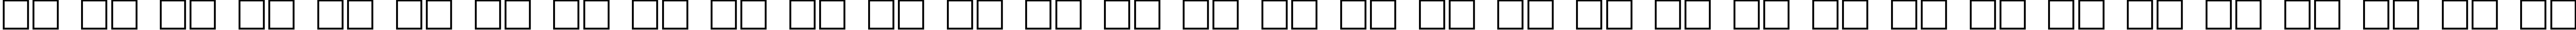 Пример написания русского алфавита шрифтом Teslic`sDocument